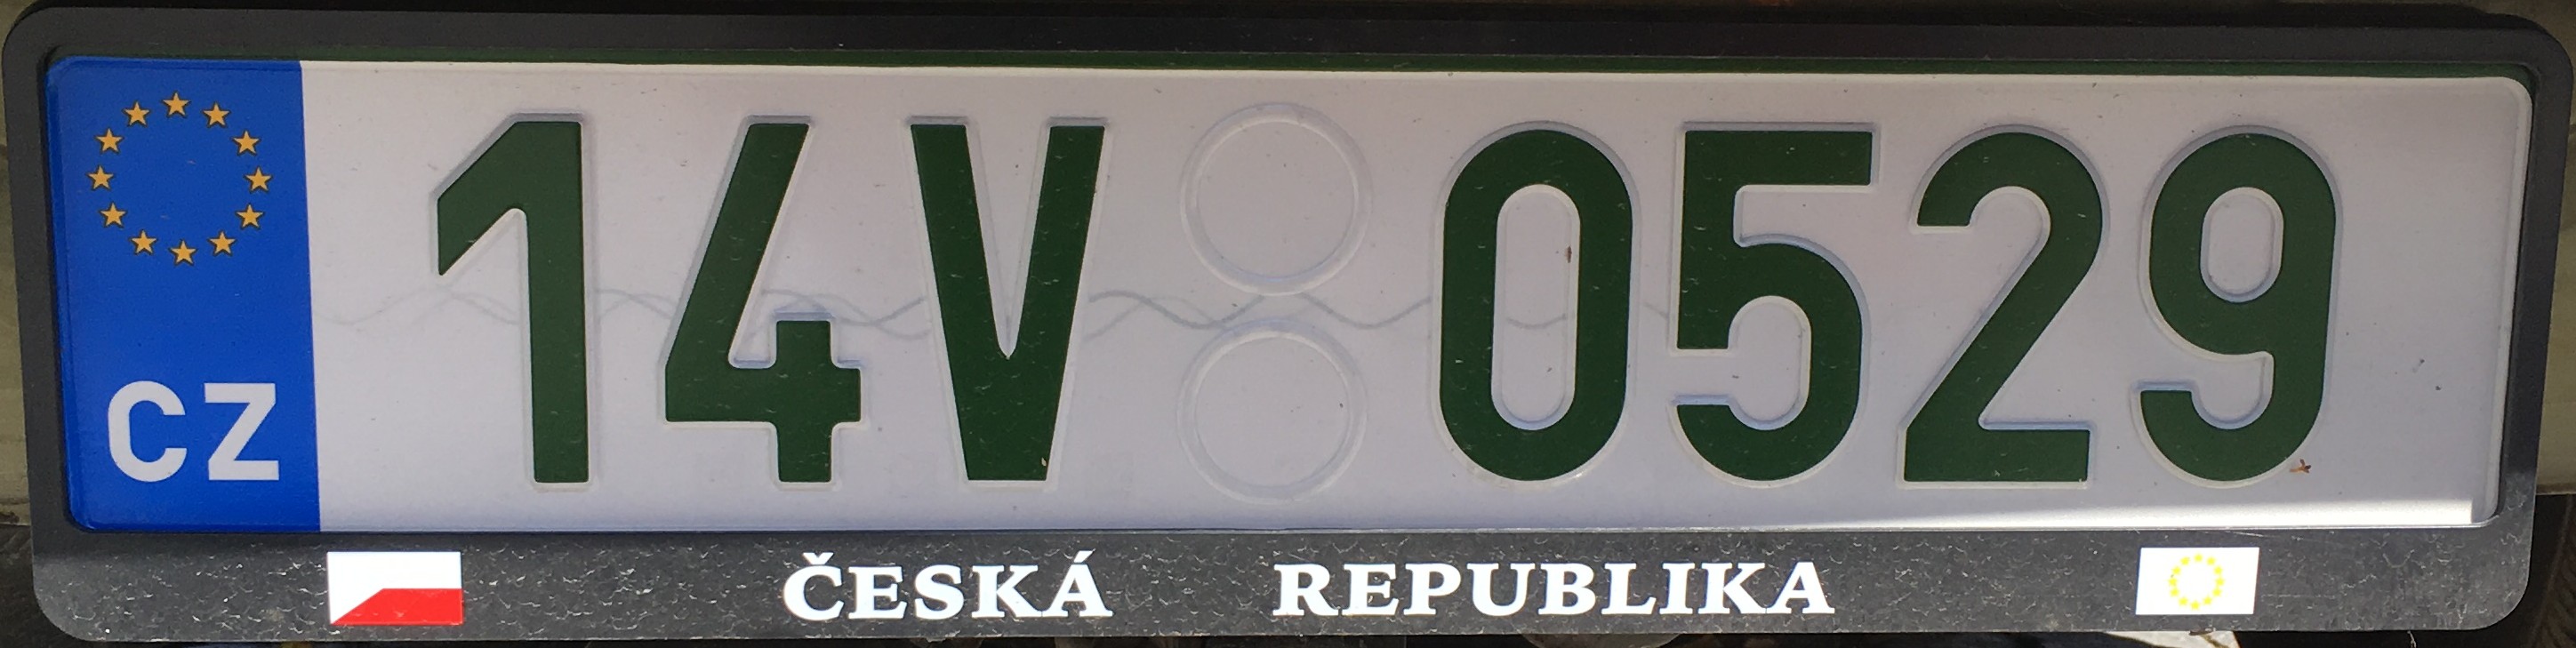 Česká registrační značka - veteránská ze Zlínského kraje